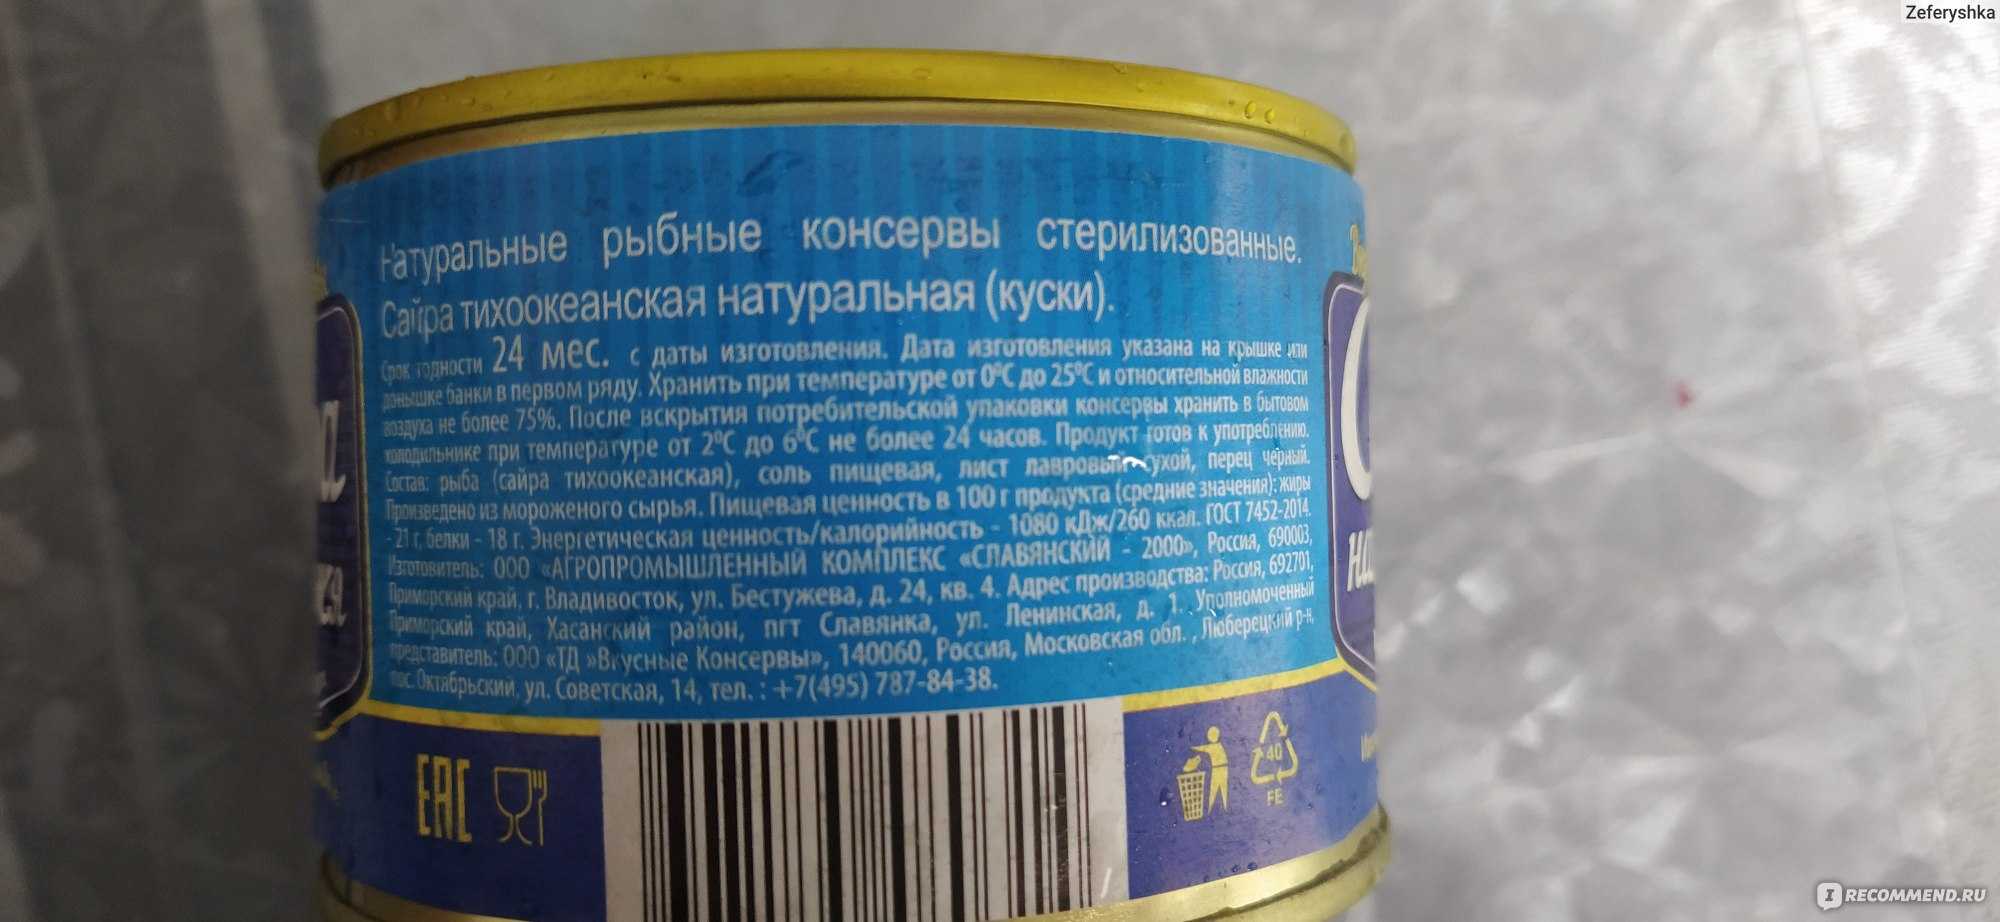 Рыба голубых кровей — сайра: какова ее польза и есть ли вред от консервов? сайра консервированная: вред и польза, состав, калорийность на 100 грамм